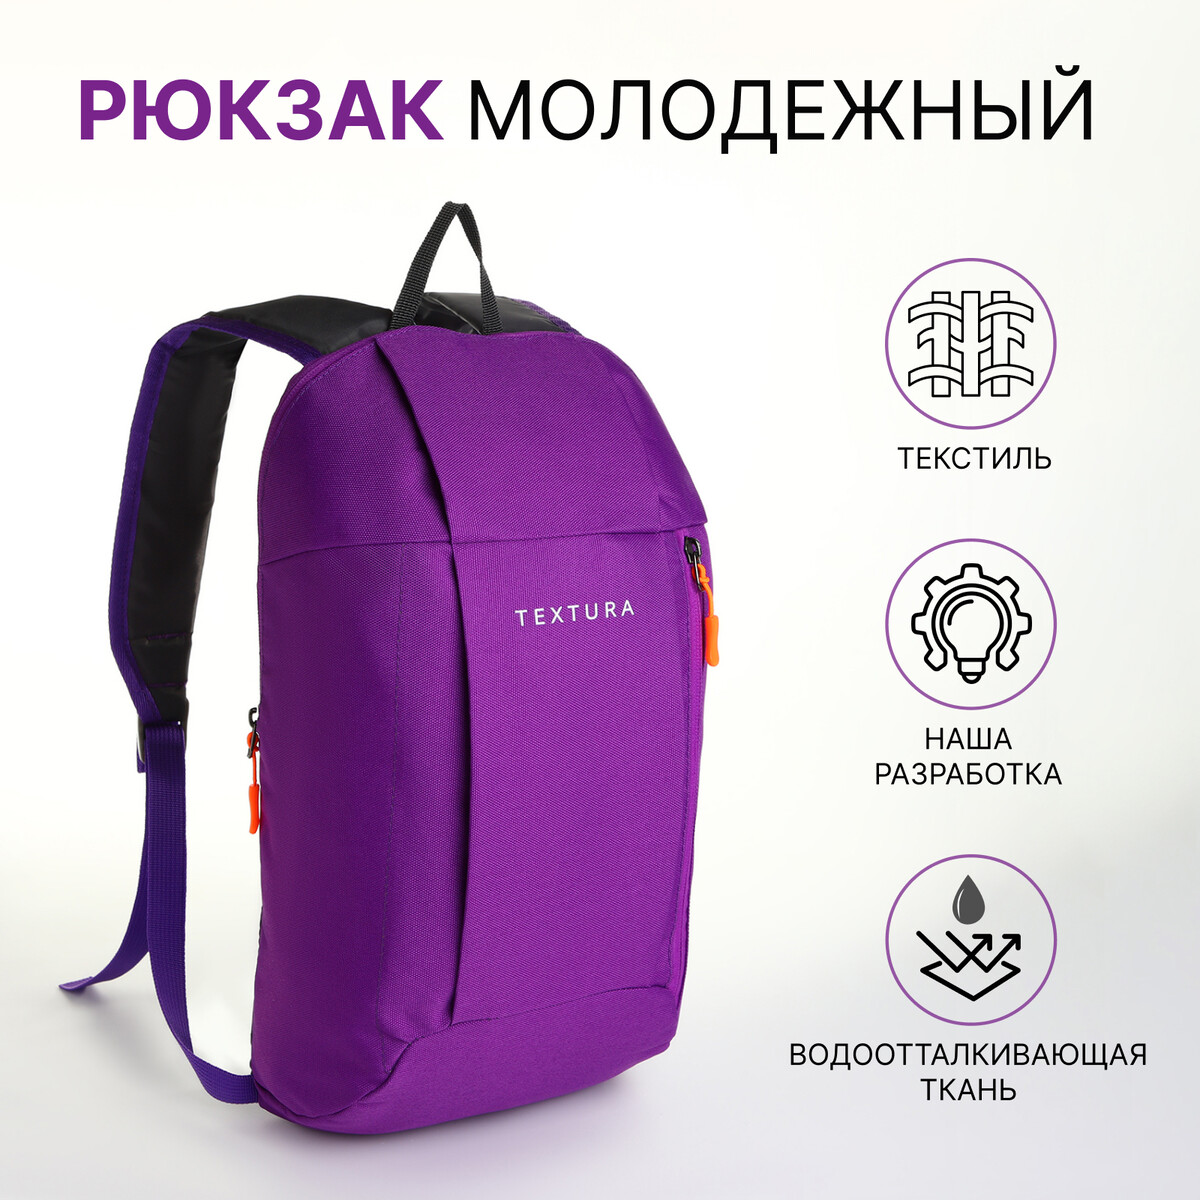 Рюкзак спортивный на молнии textura, наружный карман, цвет фиолетовый рюкзак на молнии фиолетовый